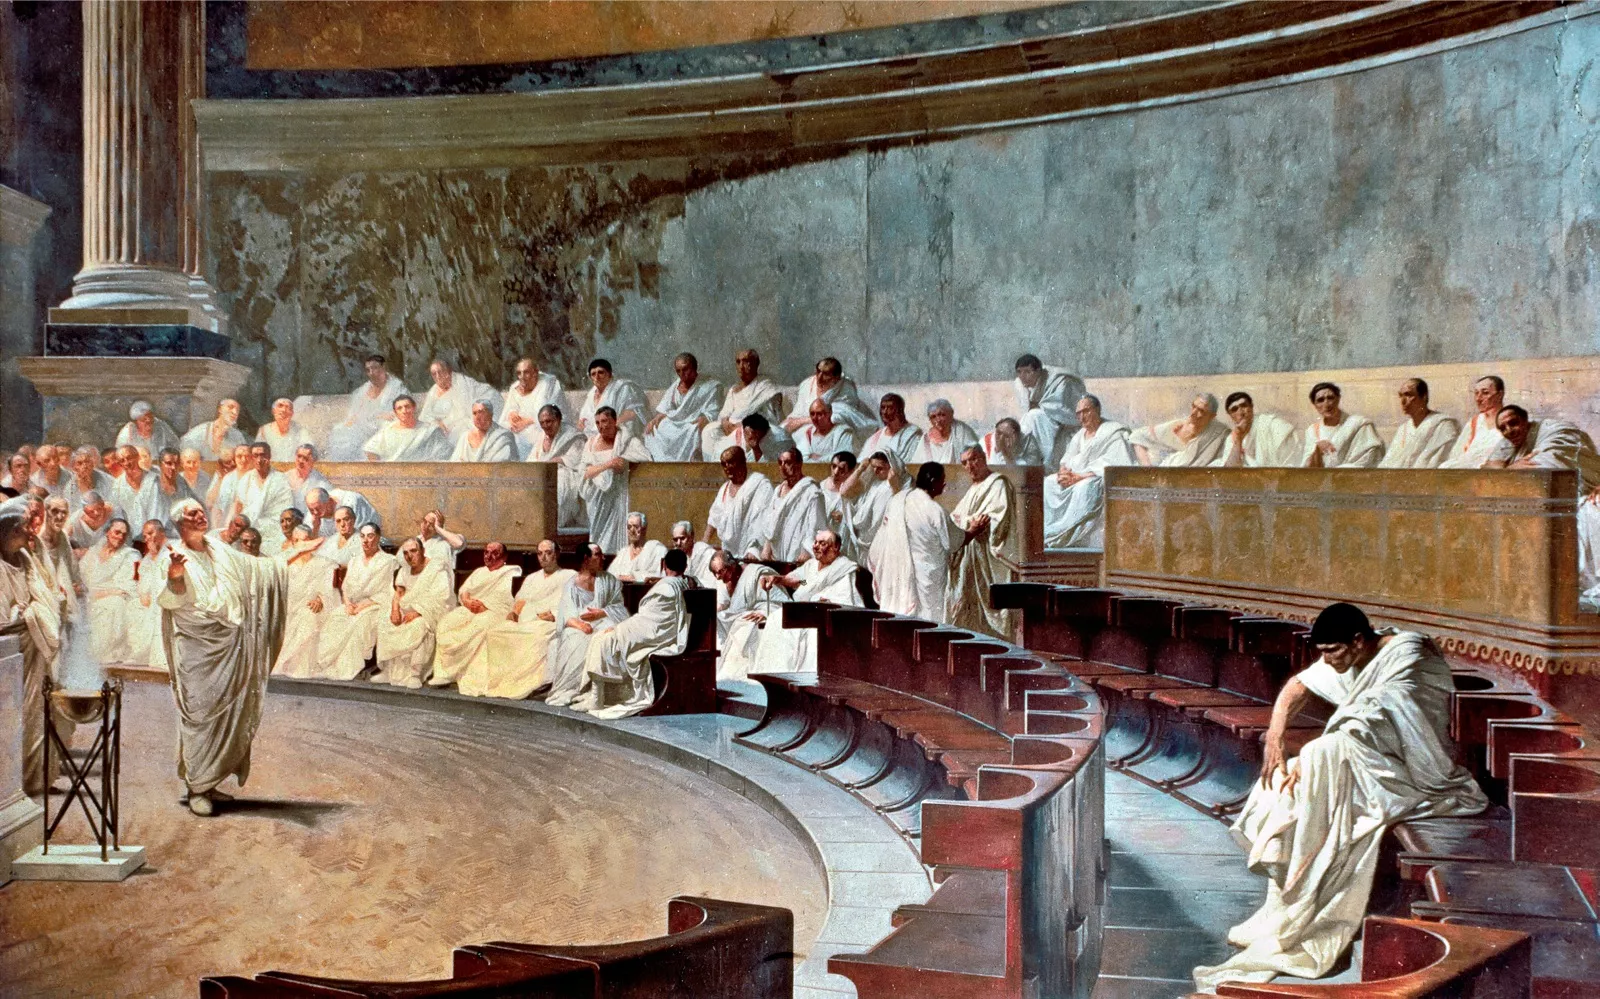 Ciceró acusa Catilina sota l’atenta mirada dels senadors de Roma en un fresc de Maccari que es troba al Palazzo Madama, seu del Senat italià actual